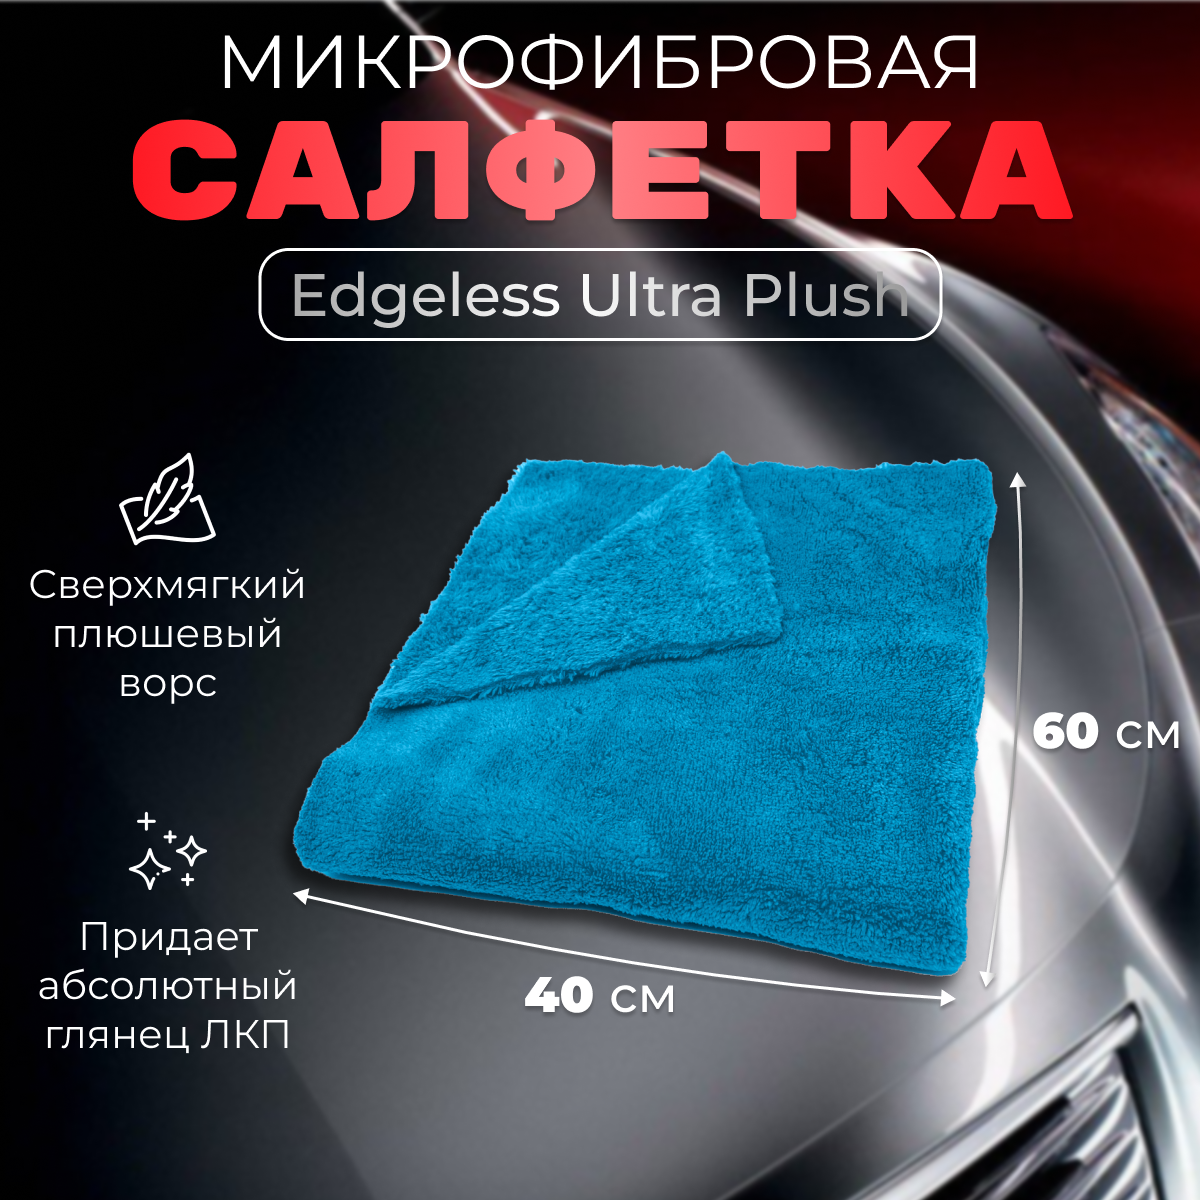 Салфетка из микрофибры Hi-Tech EDGELESS ULTRA PLUSH для протирки автомобиля, супер мягкая